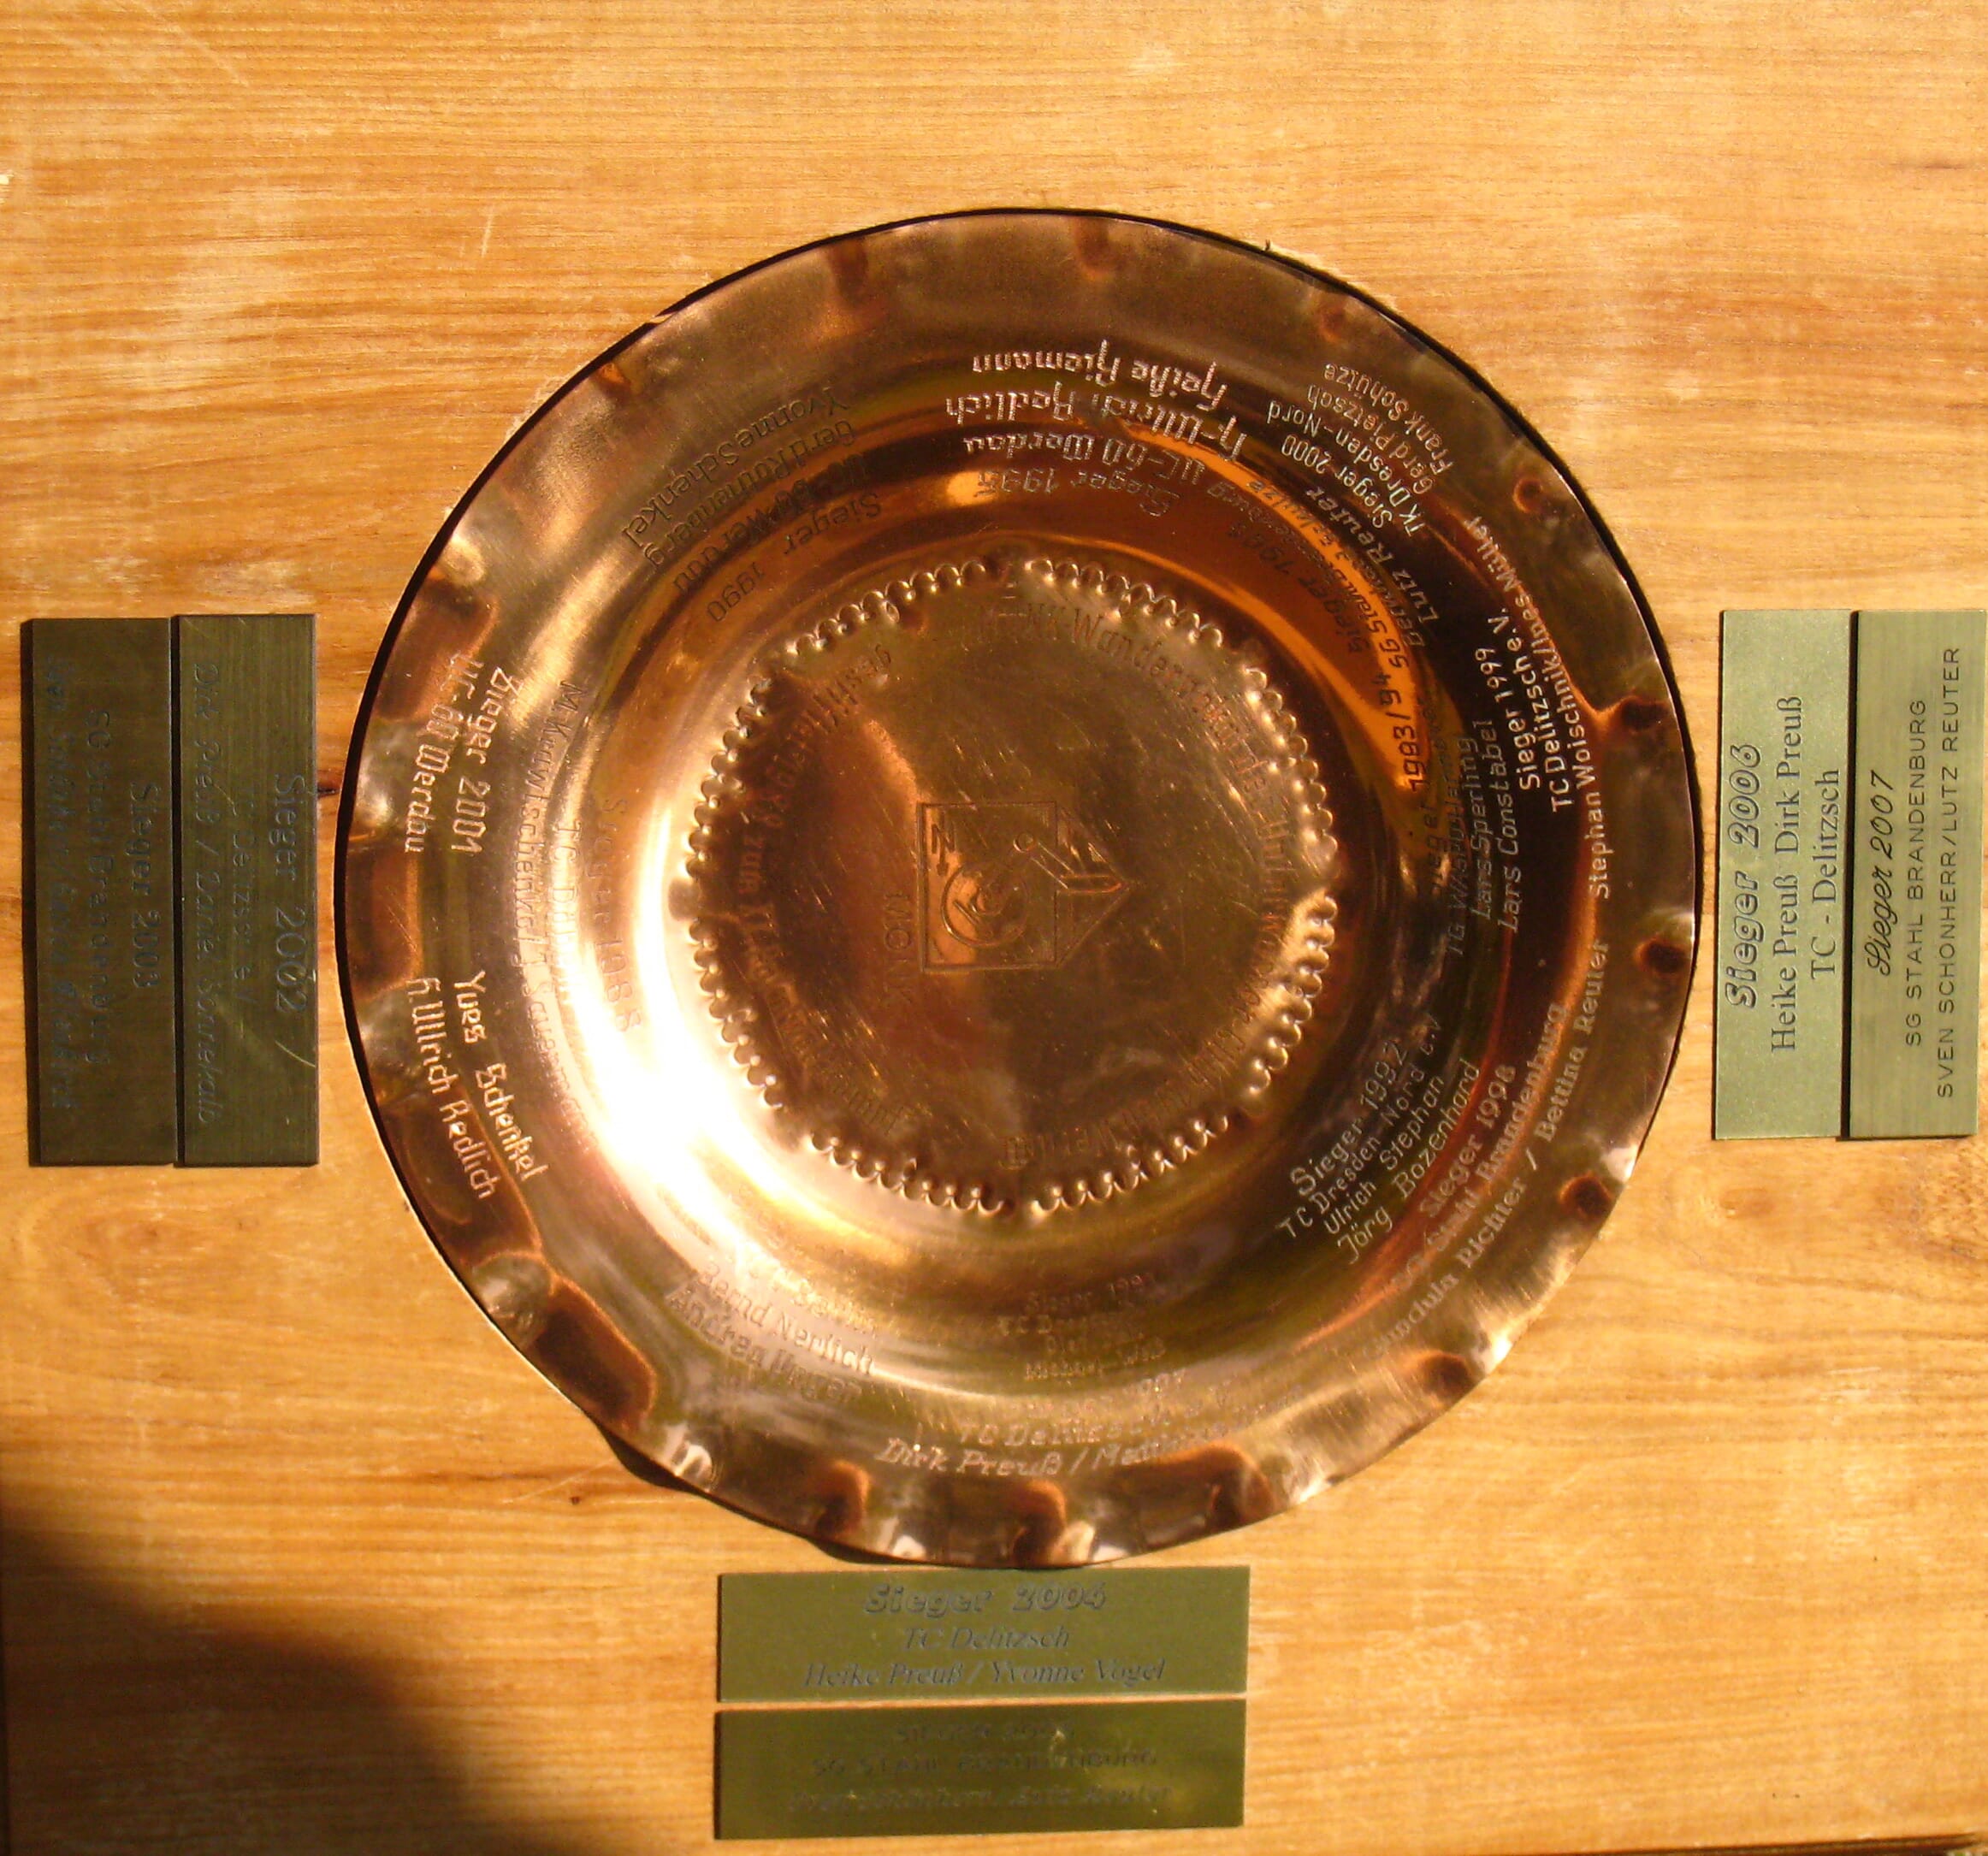 MONK-Pokal des Unterwasser-Club 1960 Werdau/Sa. e.V. (Bild: S. Beier)